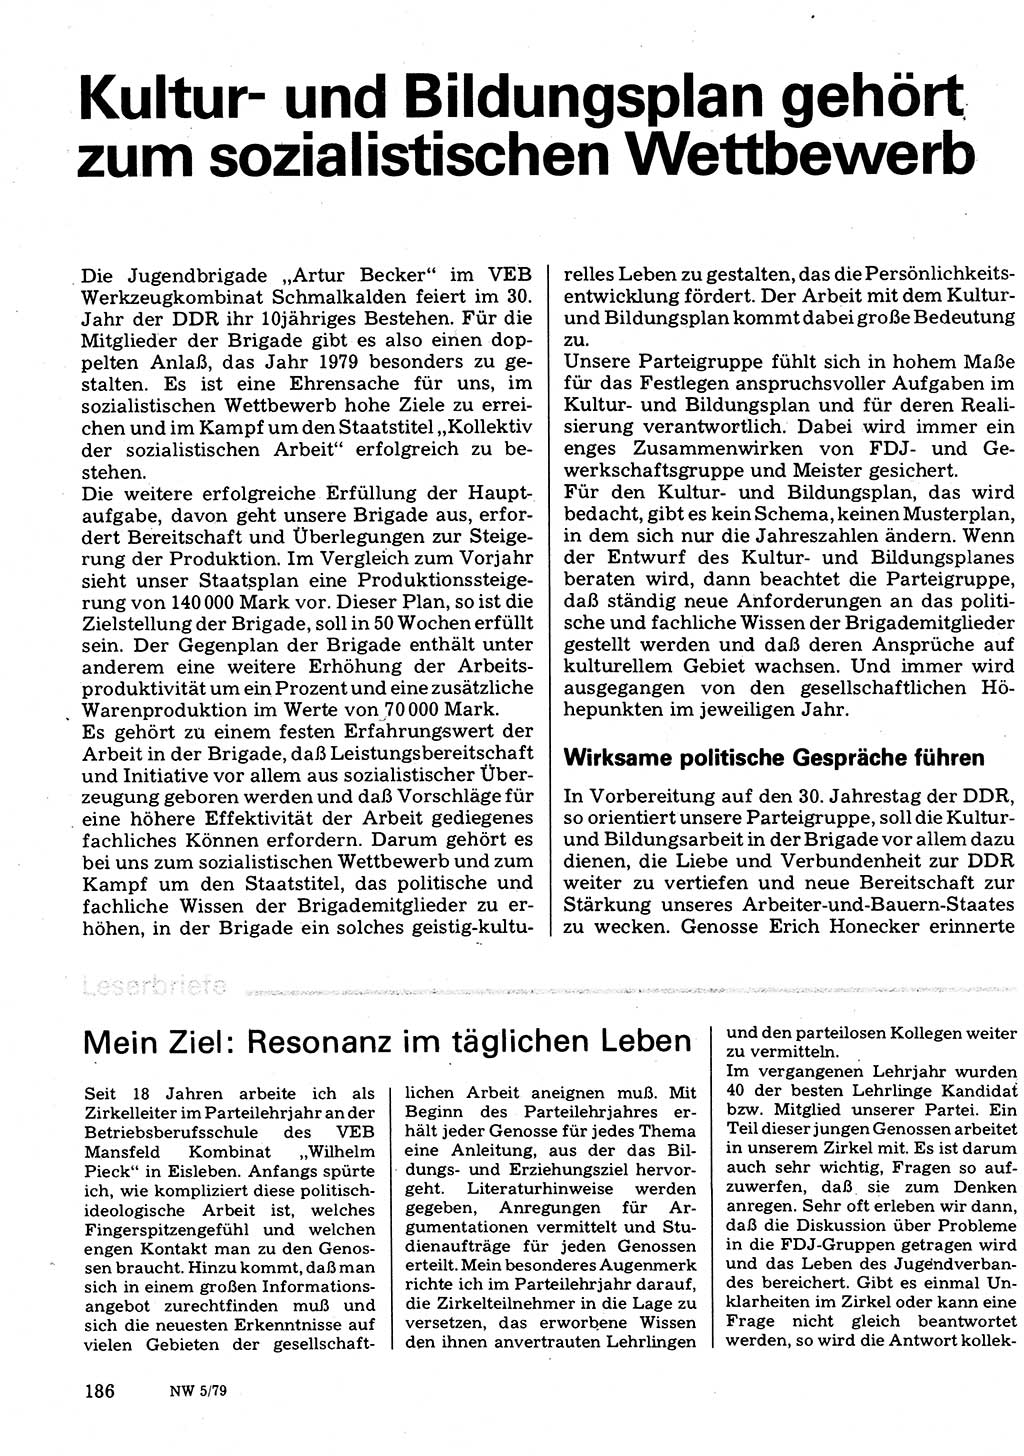 Neuer Weg (NW), Organ des Zentralkomitees (ZK) der SED (Sozialistische Einheitspartei Deutschlands) für Fragen des Parteilebens, 34. Jahrgang [Deutsche Demokratische Republik (DDR)] 1979, Seite 186 (NW ZK SED DDR 1979, S. 186)